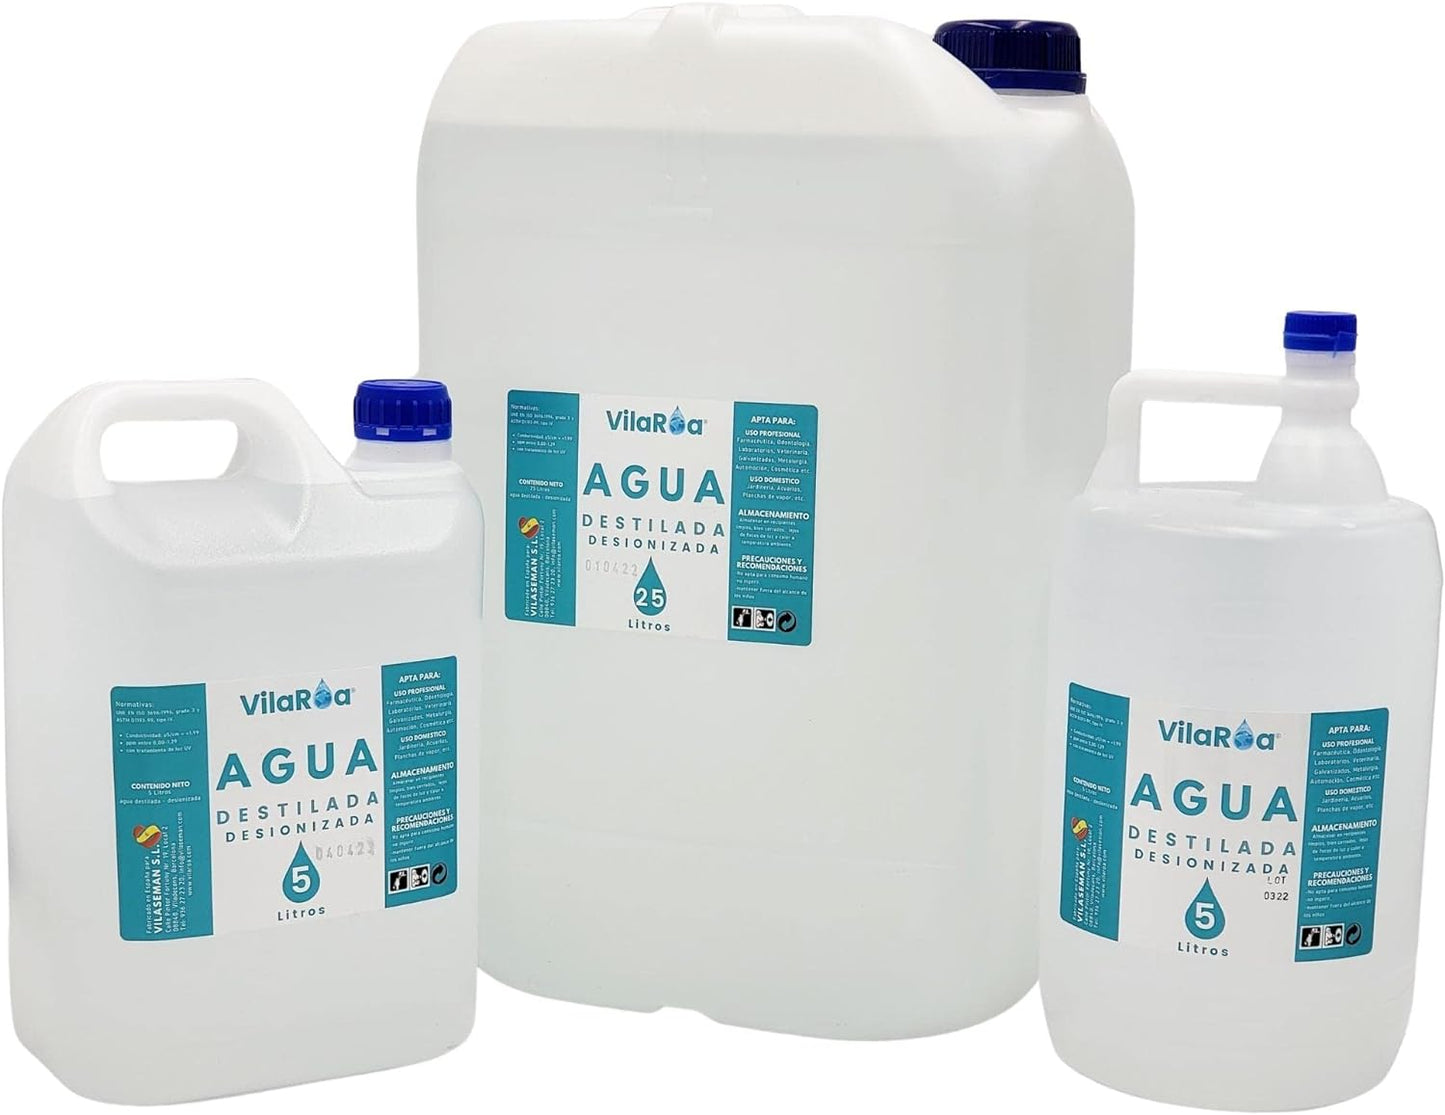 3 X Vilaroa Agua Destilada Desionizada, 5 litros, Apto para CPAP, Autoclaves y Múltiples Usos